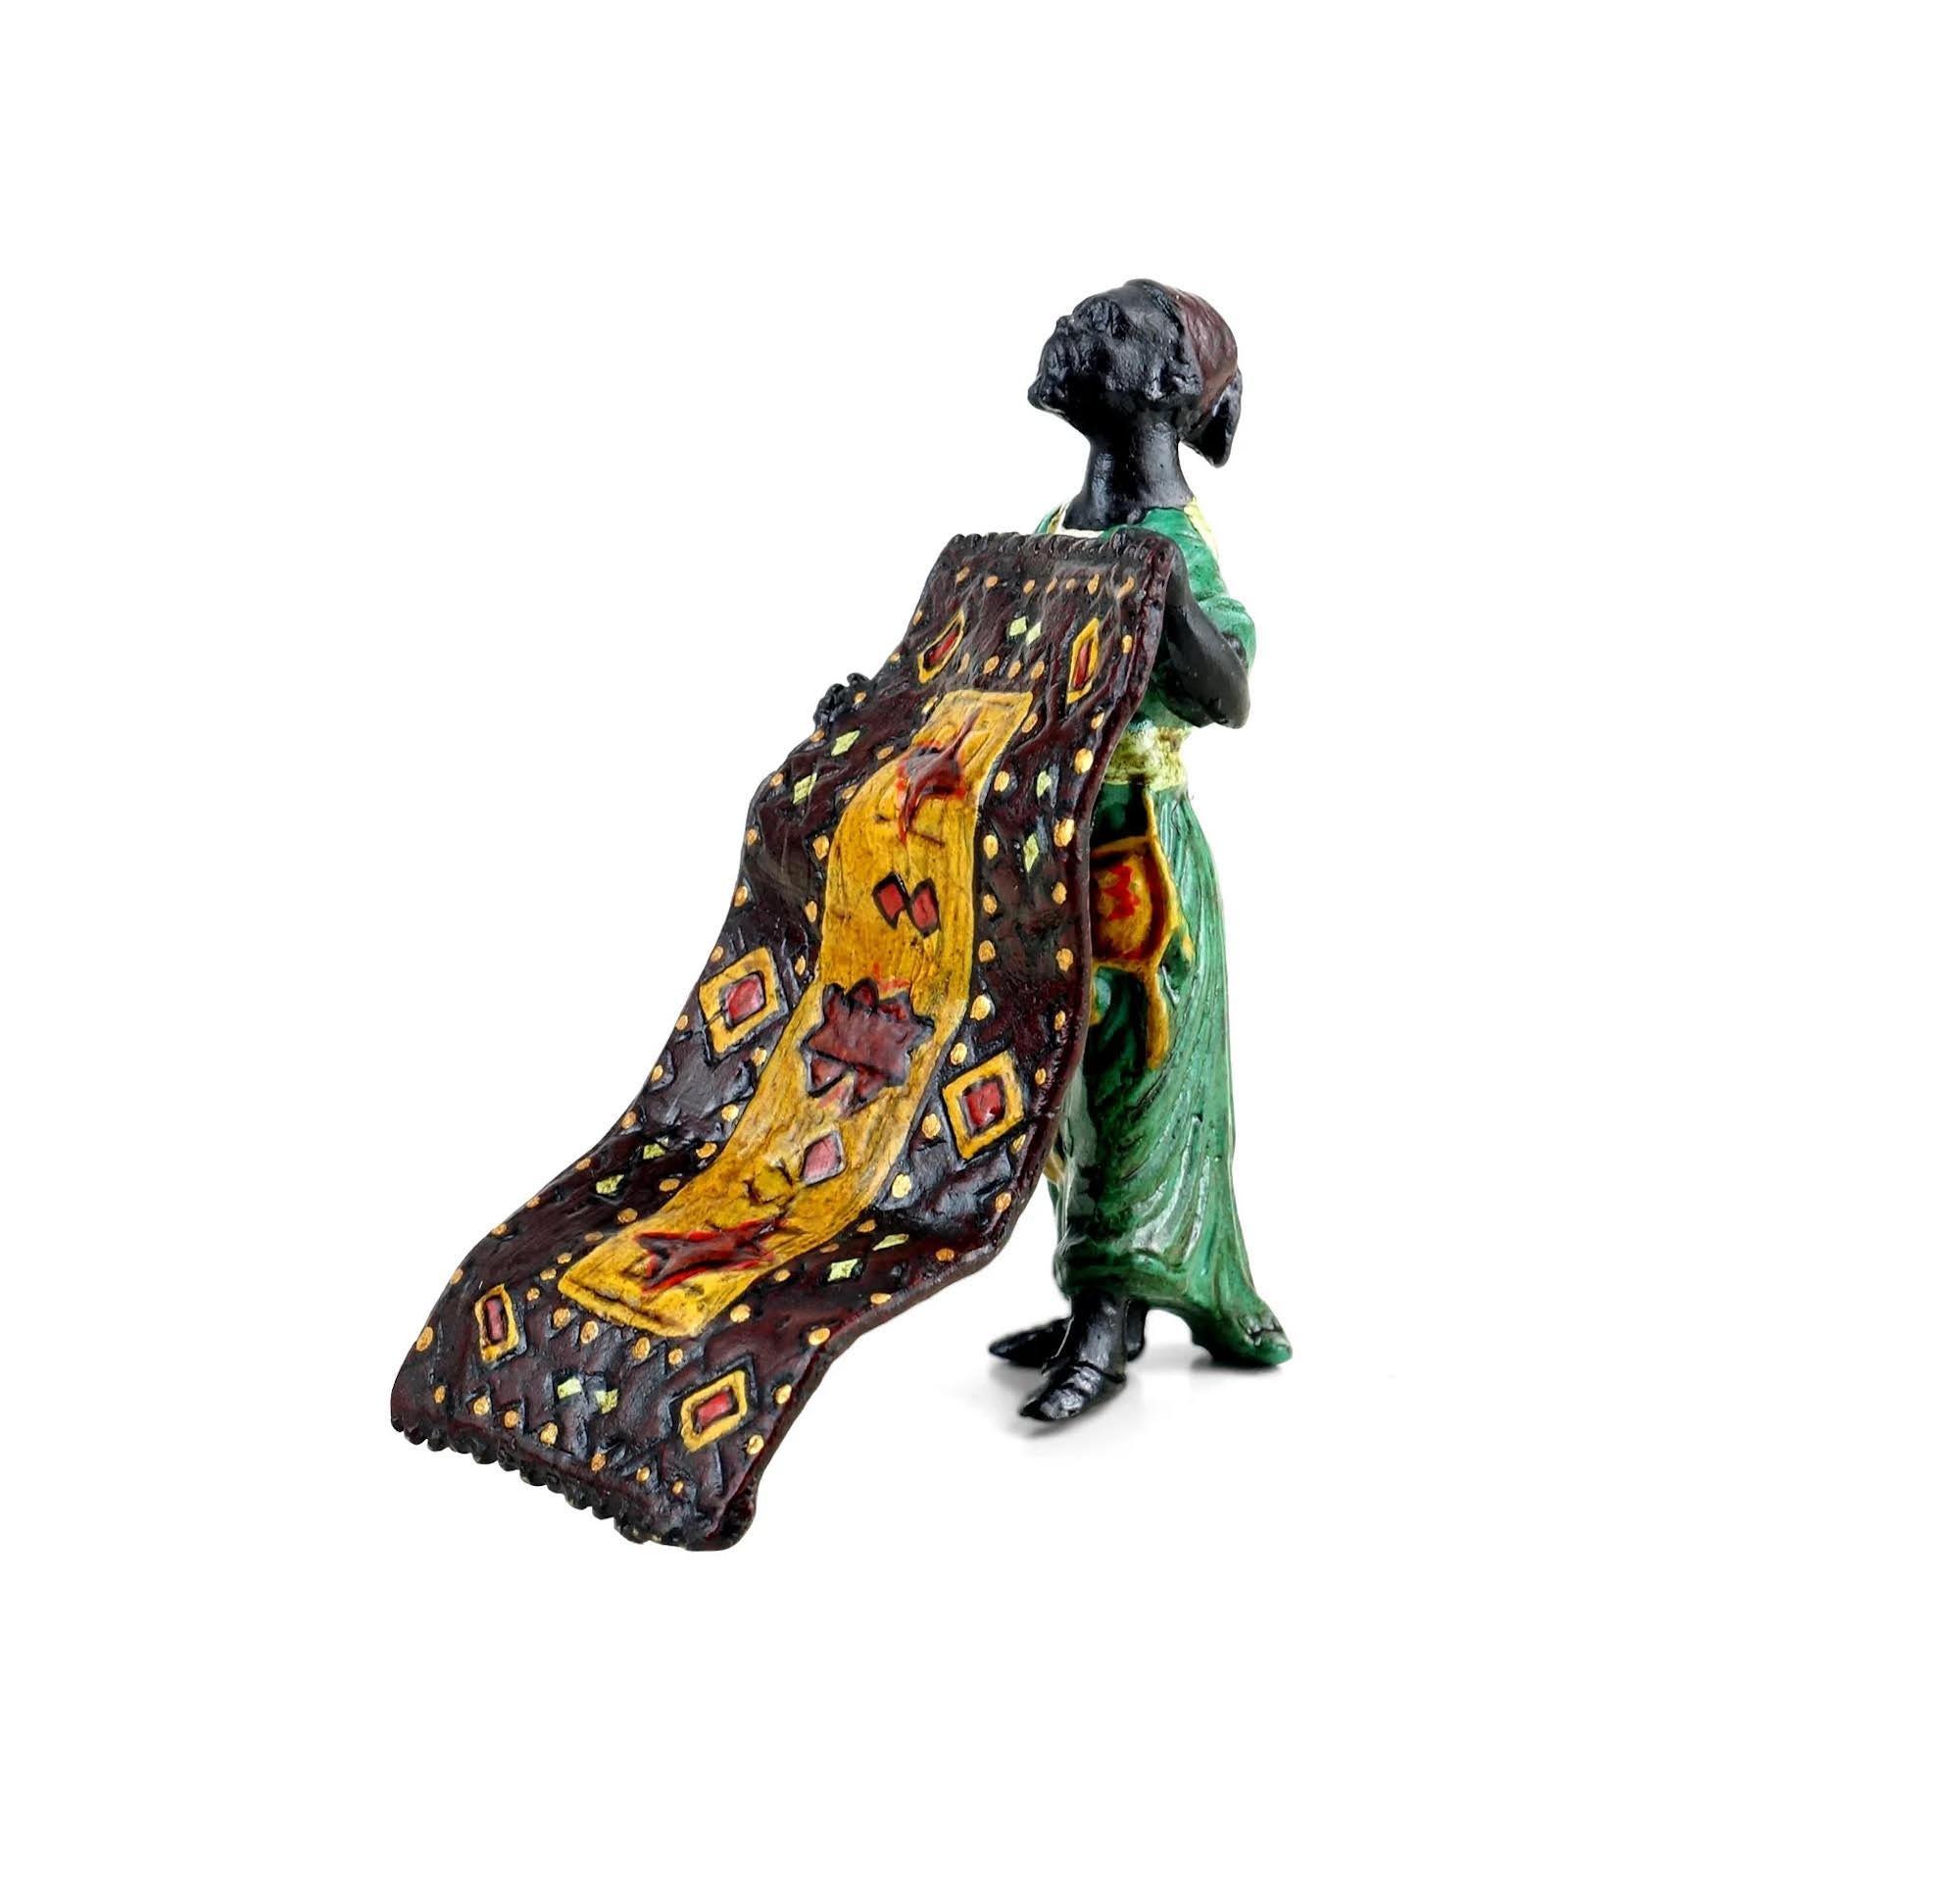 Sculpture, bronze de Vienne, représentant un marchand de tapis orientaliste, signée, production moderne de belle qualité.
Délai de production estimé : 1 à 2 semaines.

L : 5cm, H : 8cm, P : 6cm